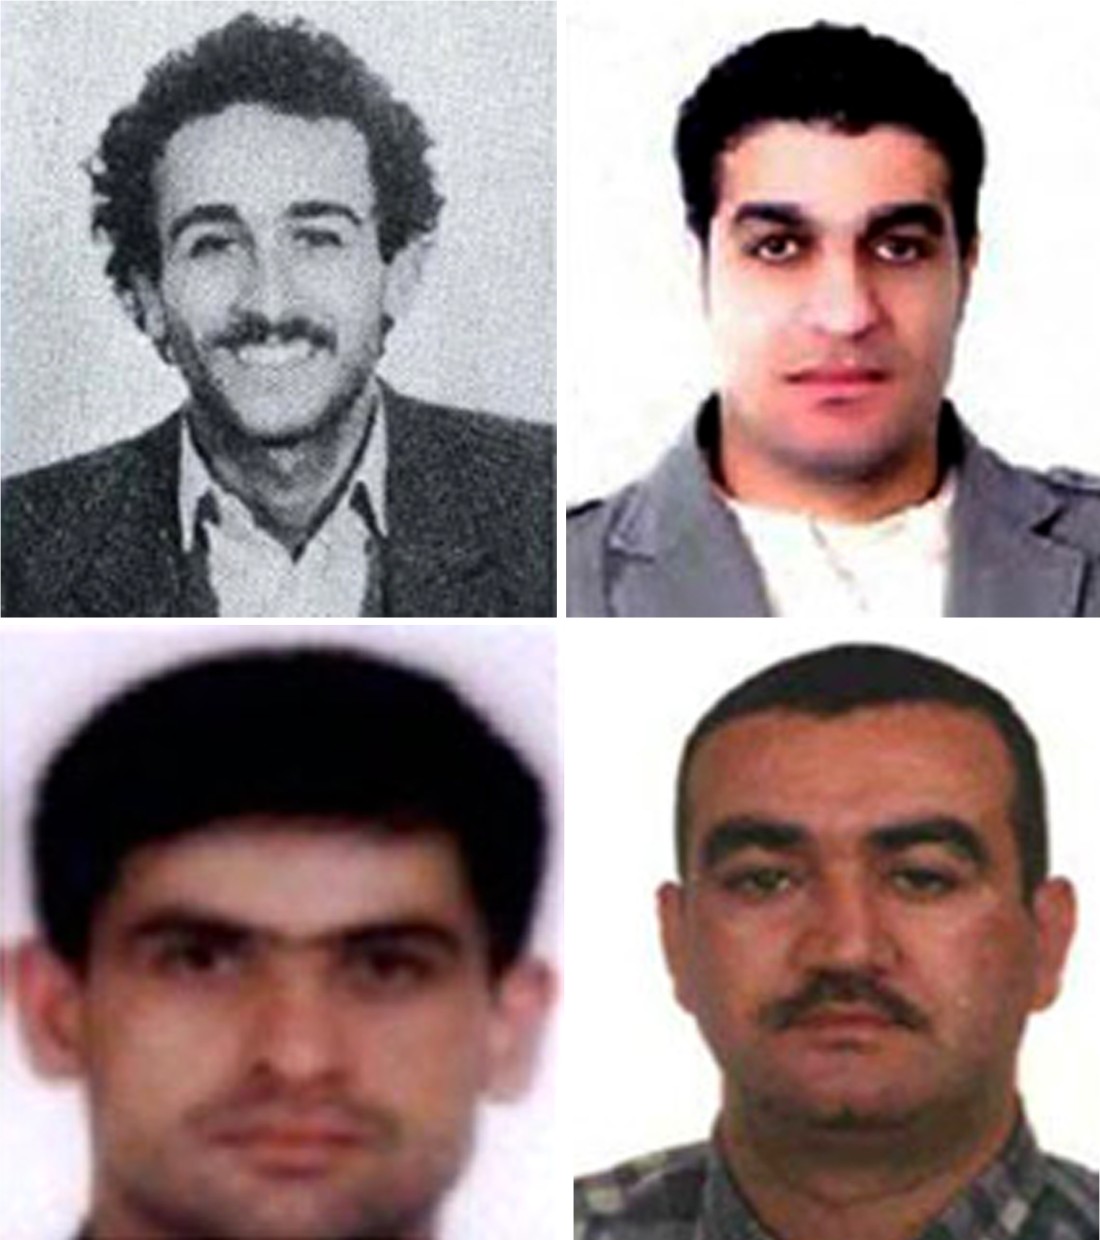 حكمت المحكمة الخاصة بلبنان على أعضاء من "الحزب" بالسجن المؤبد لتورطهما في اغتيال رفيق الحريري (ا ف ب)